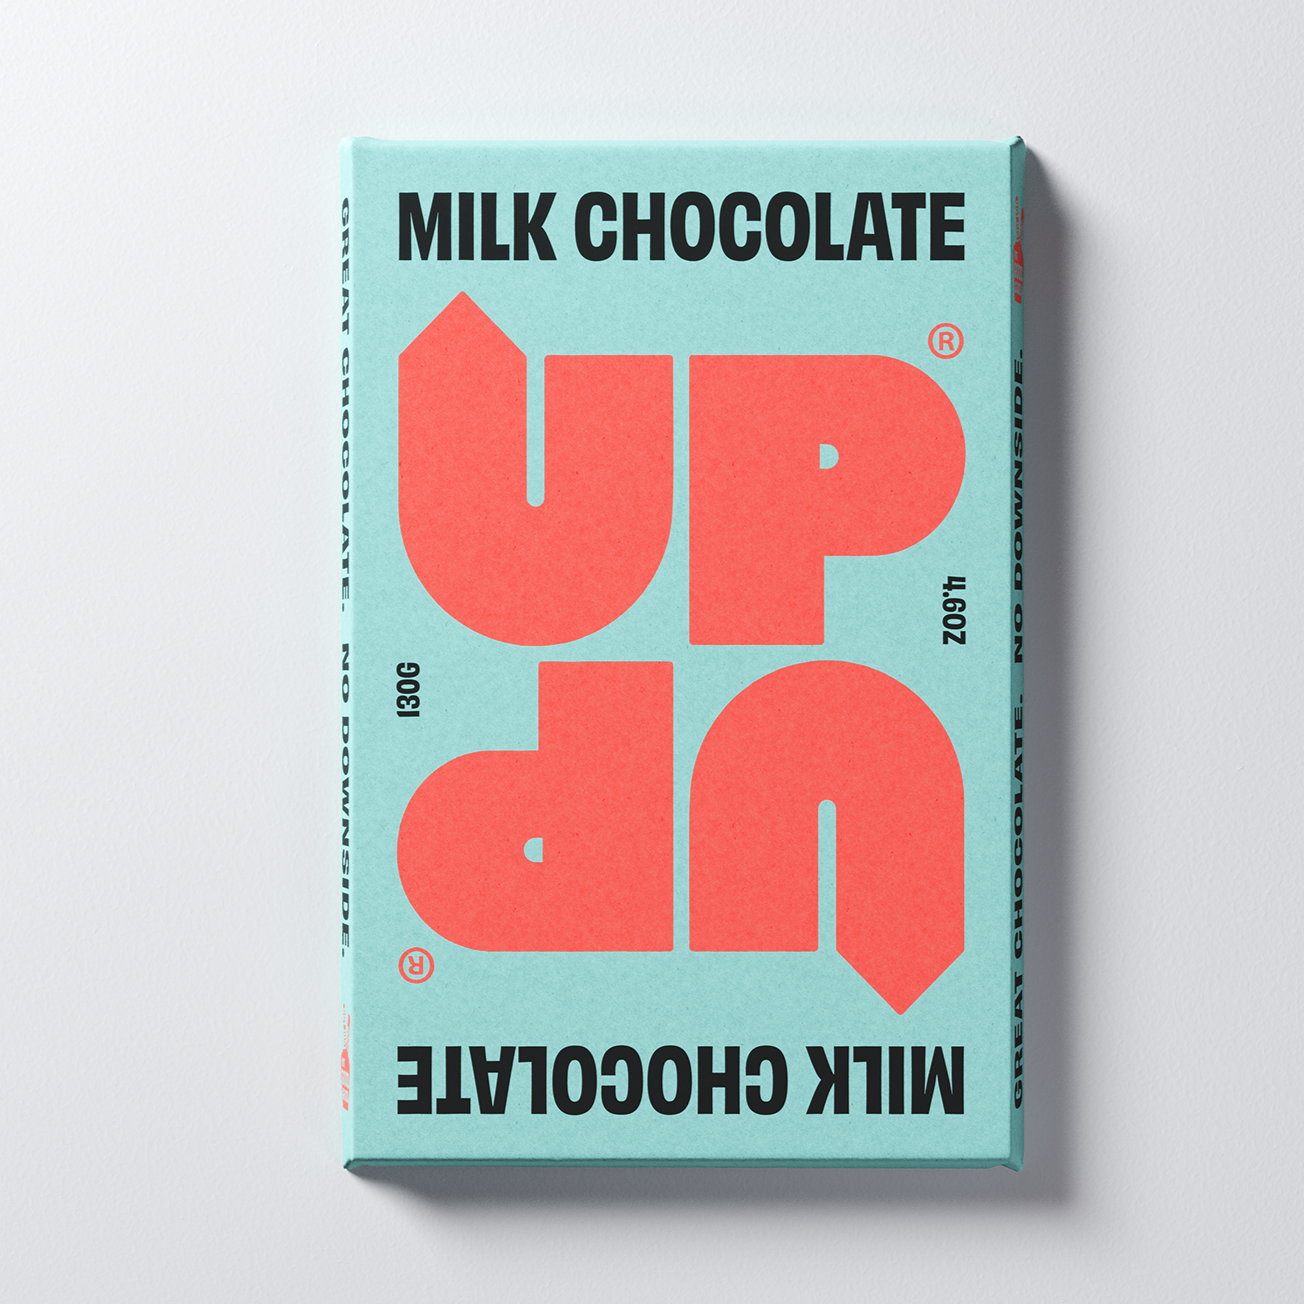 UP-UP Chocolate - Original Milk Chocolate Bar